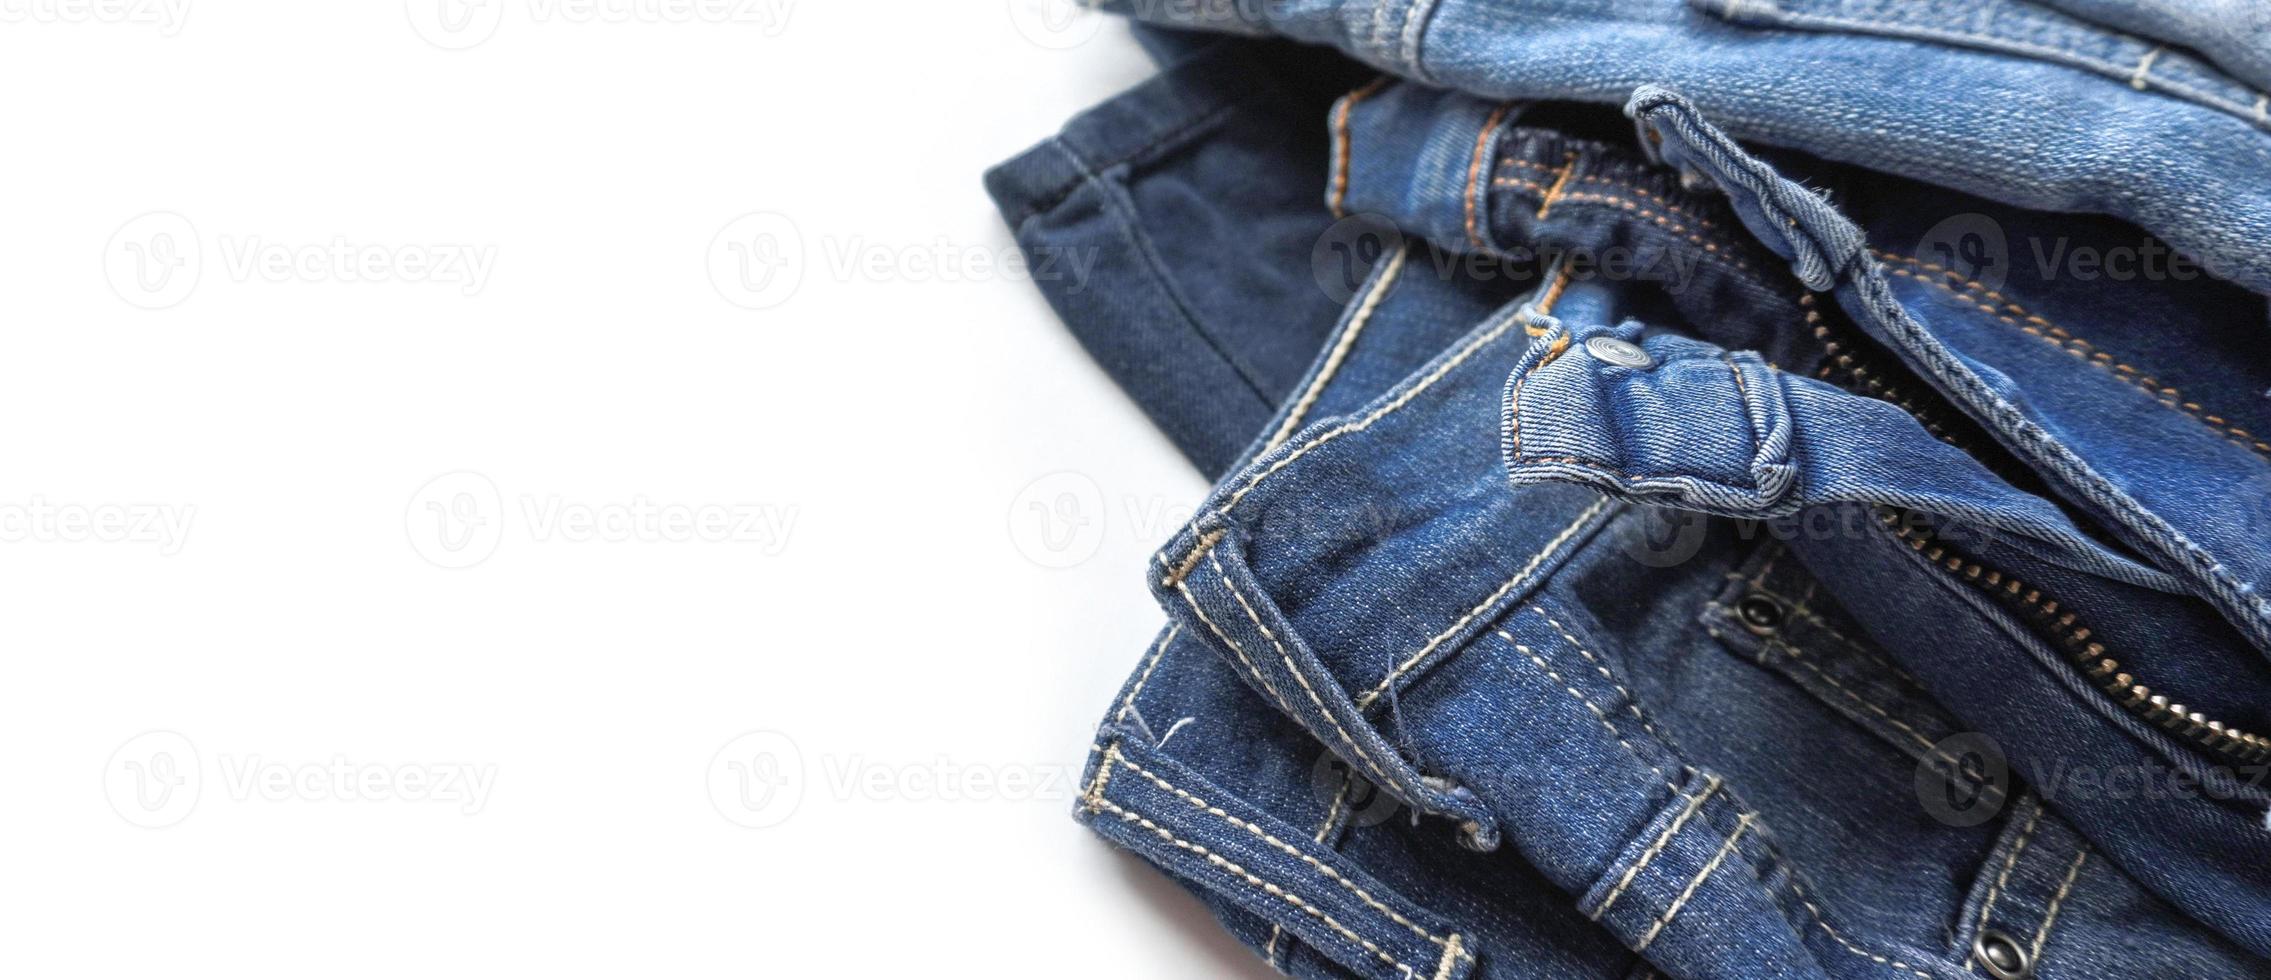 jeans de diferentes tons no banner de fundo branco com espaço de cópia foto